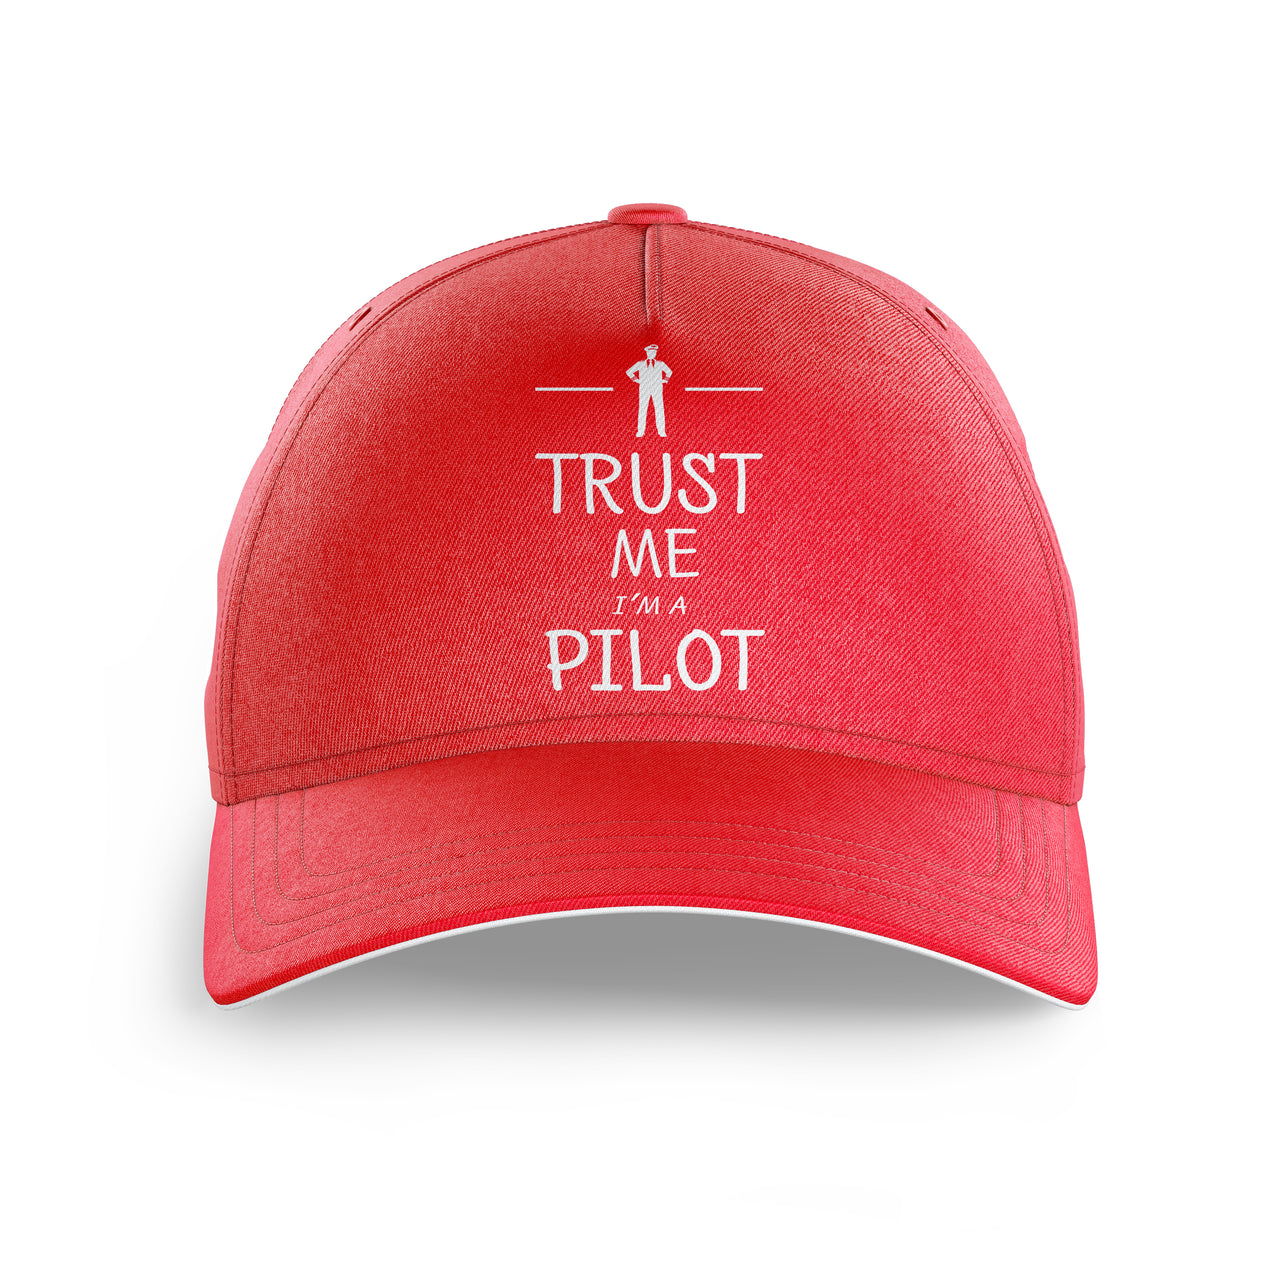 Trust Me I'm a Pilot Printed Hats